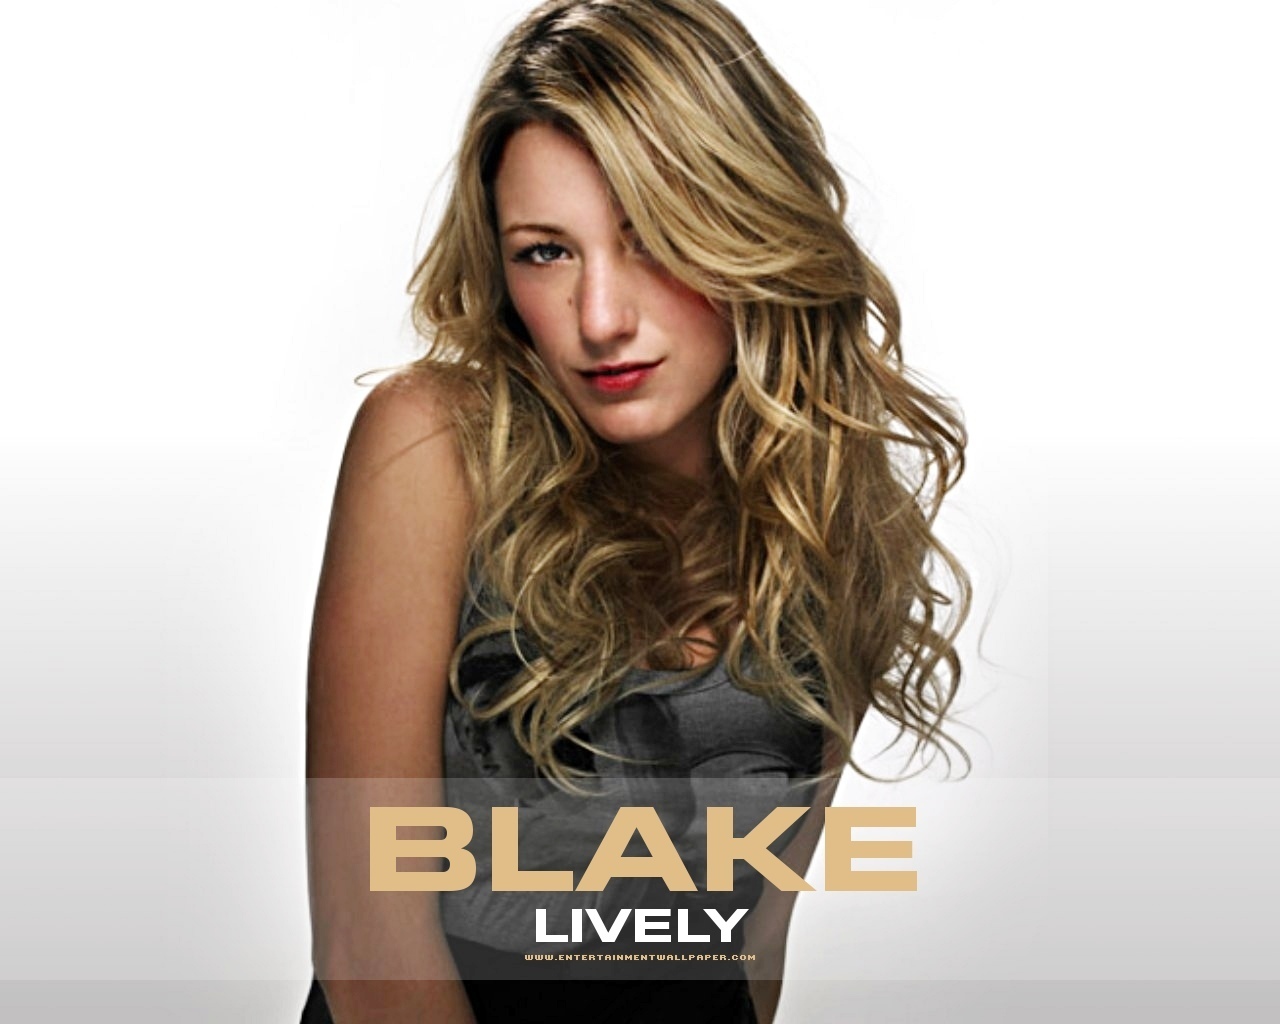 Blake - Blake Lively Wallpaper (4936756) - Fanpop